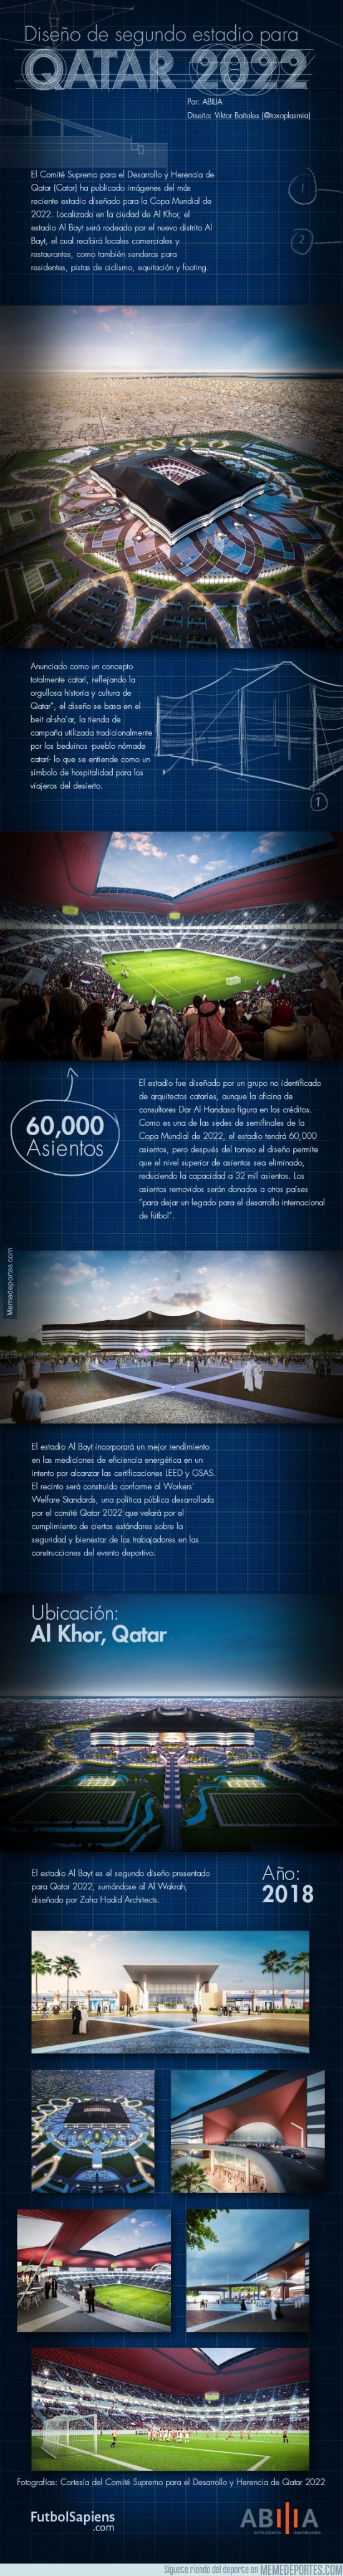 366857 - Presentación del segundo estadio para Qatar 2022